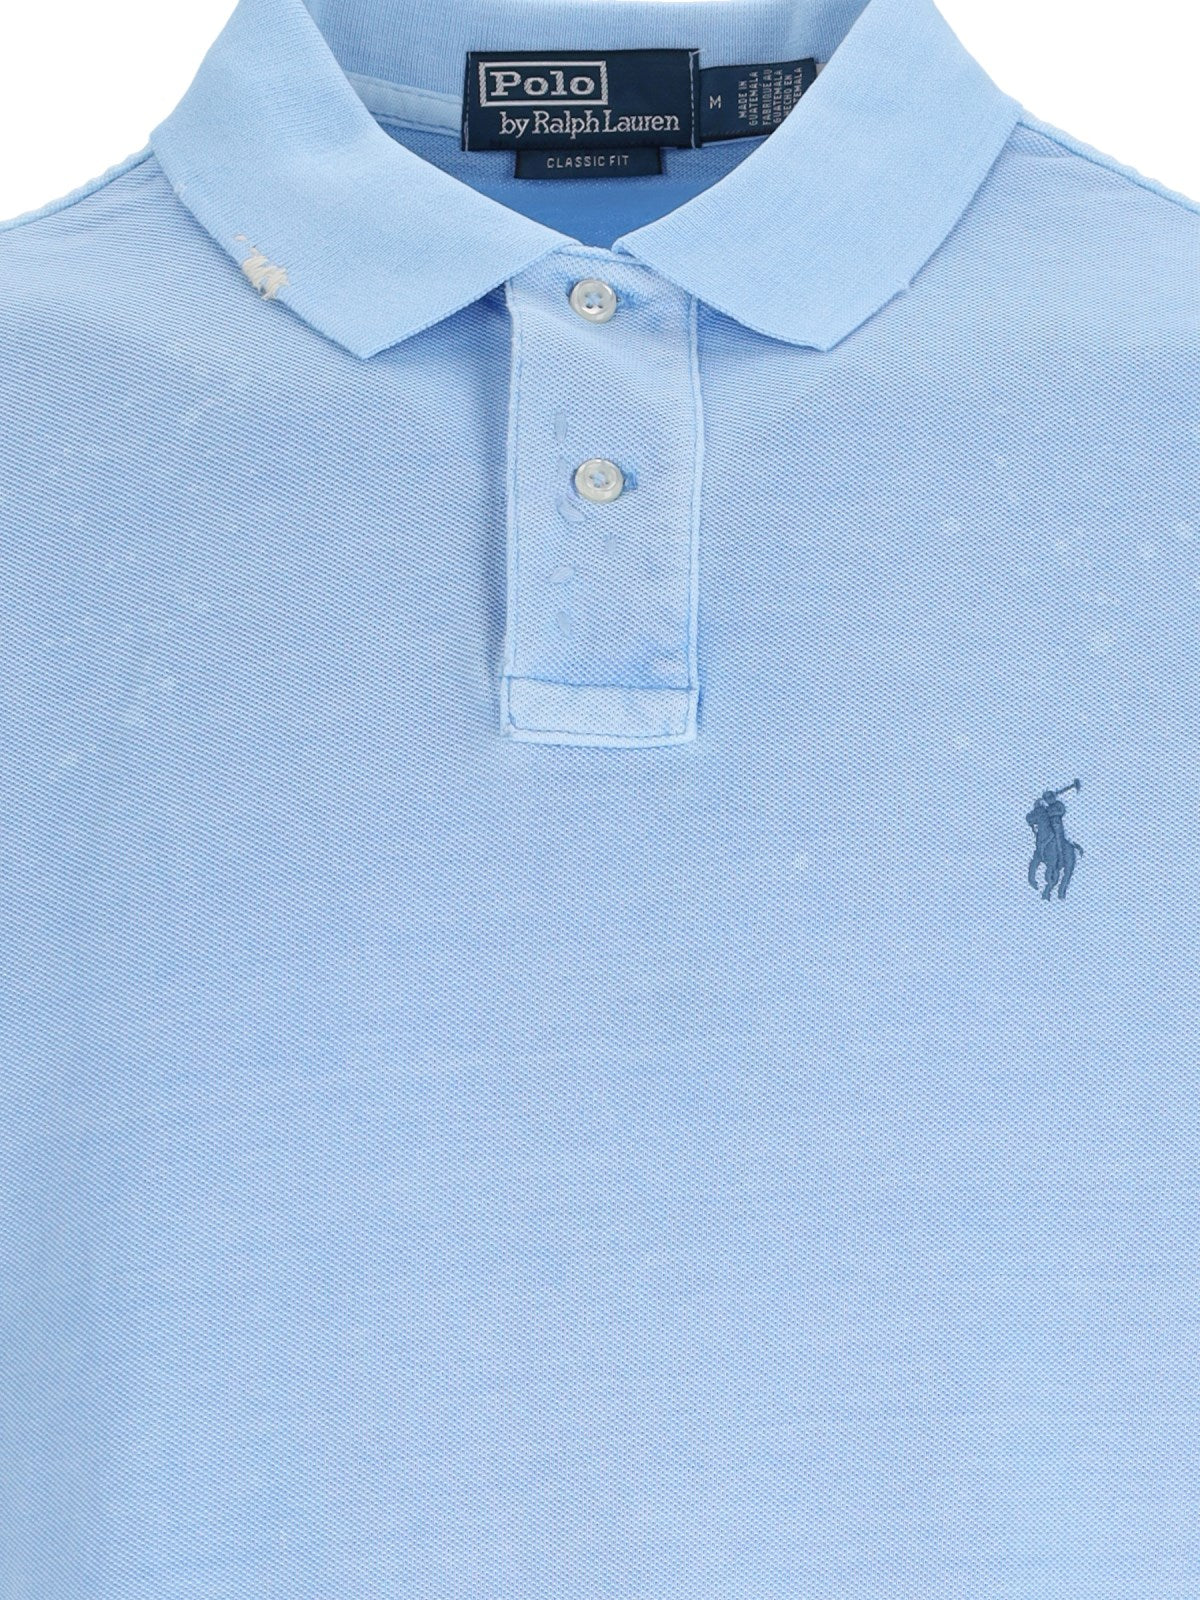 Polo Ralph Lauren Polo logo-t-shirt-Polo Ralph Lauren-Polo logo Polo Ralph Lauren, in cotone azzurro, colletto classico, maniche corte, ricamo logo blu petto, orlo dritto.-Dresso